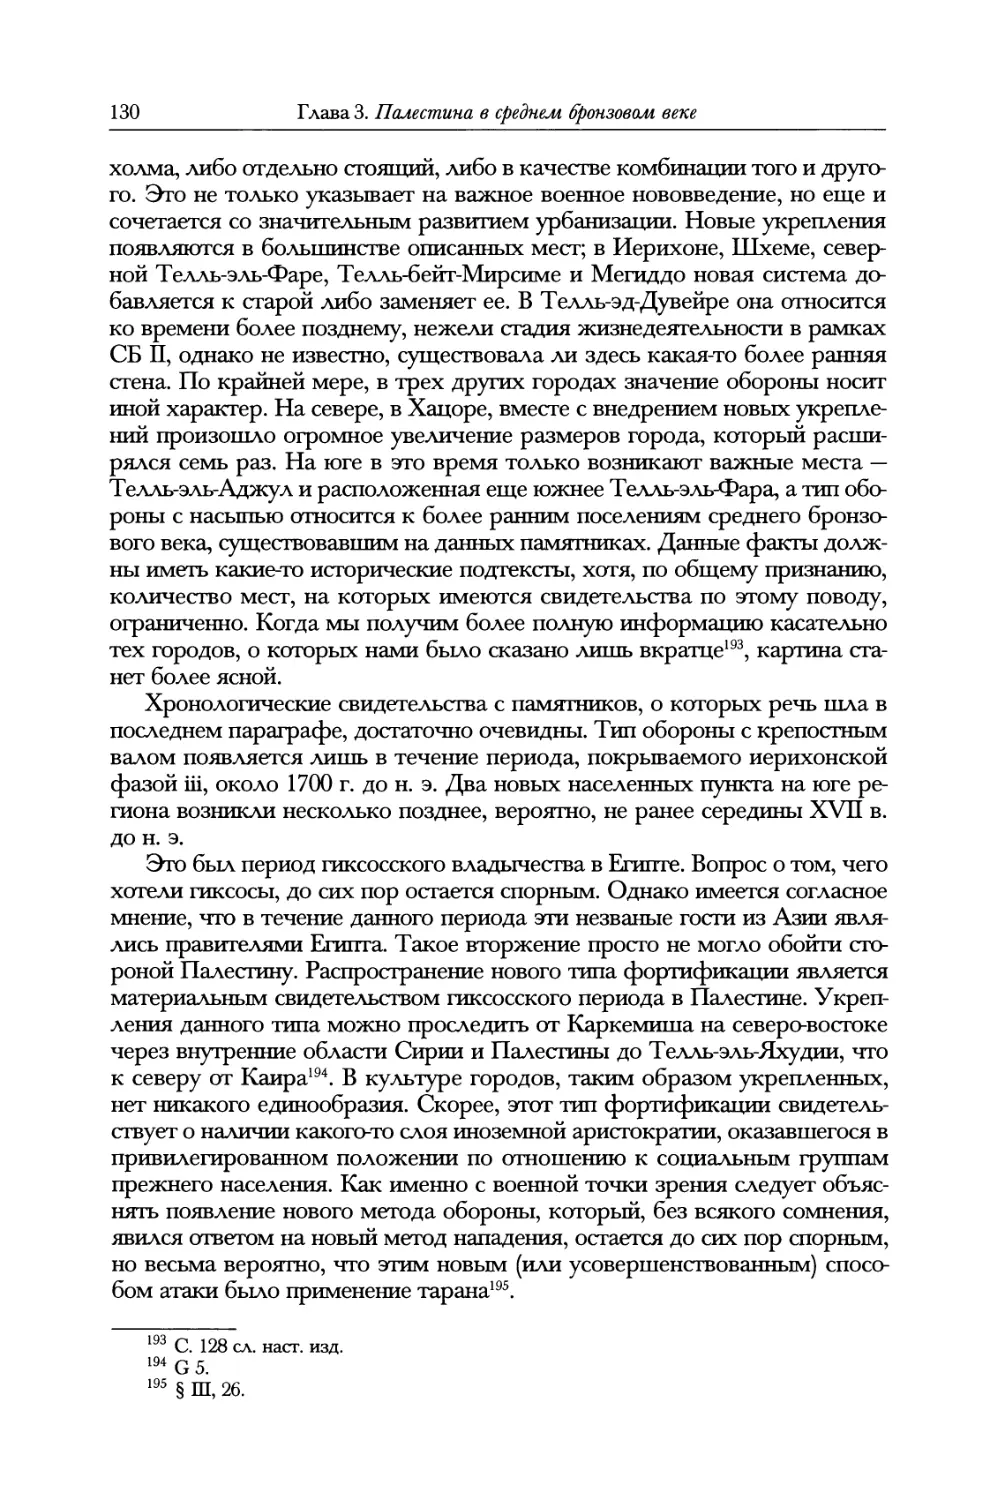 А.В. Зайков. Библиографическое дополнение